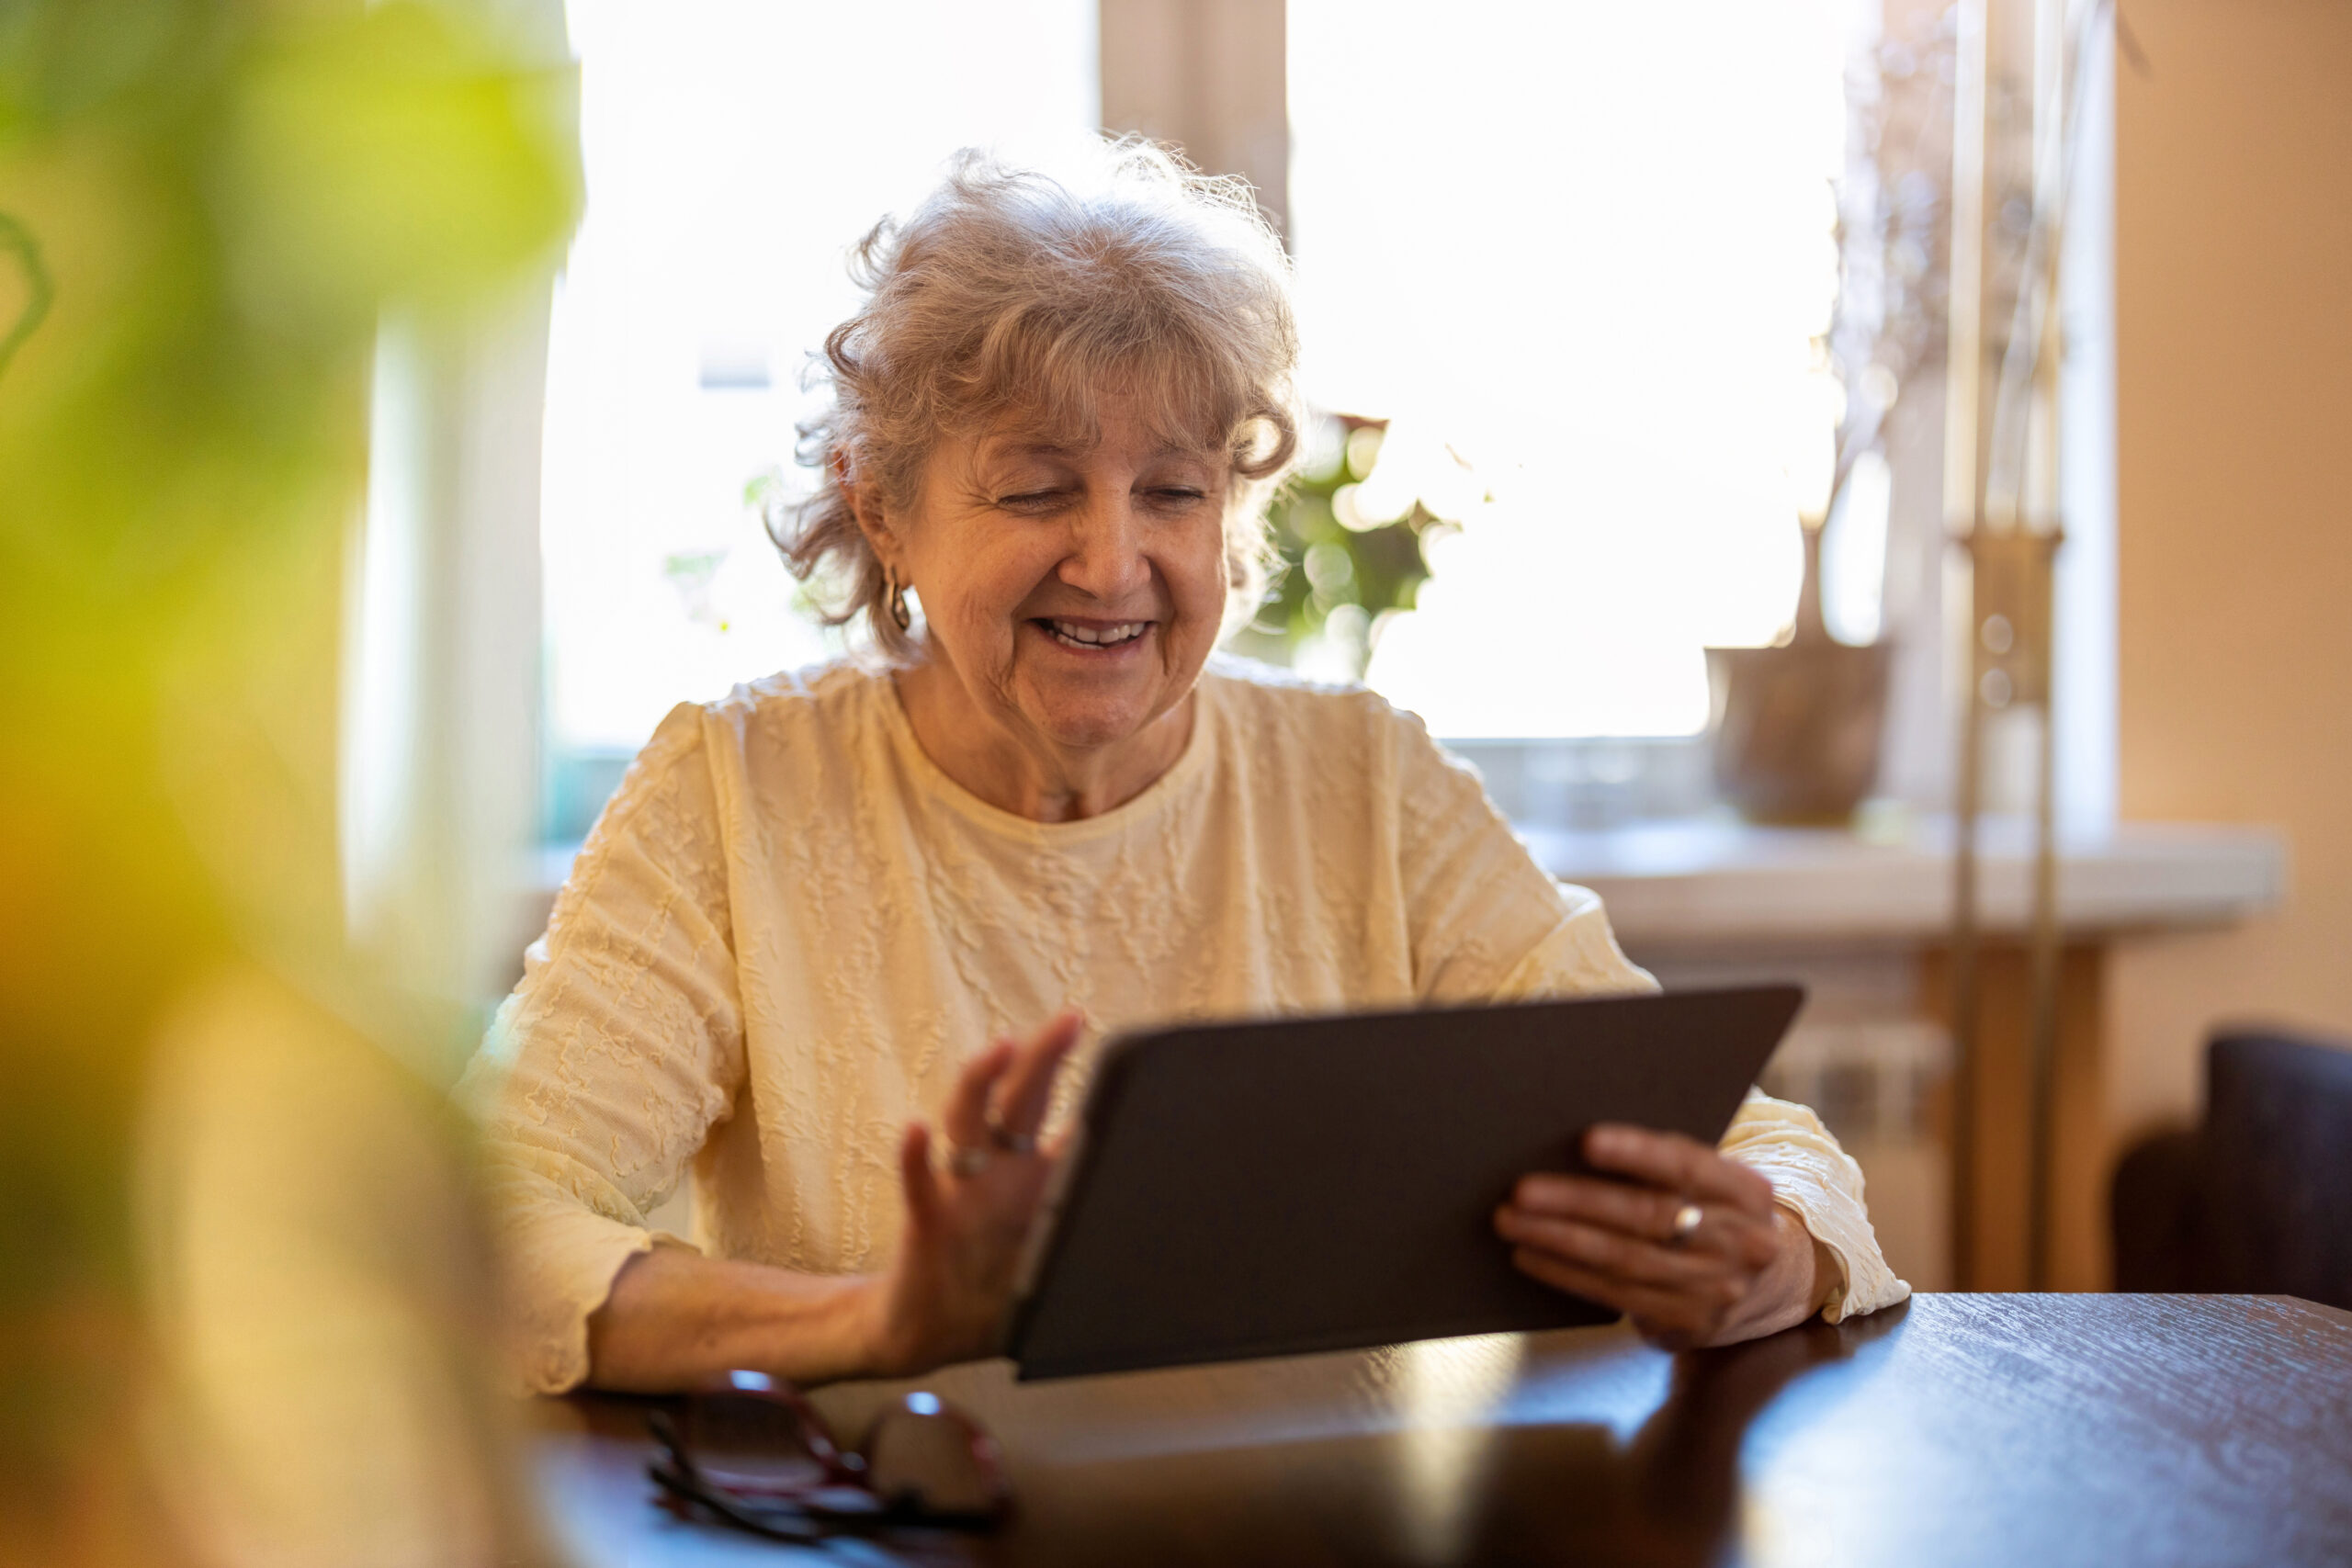 Digitale zorg en ondersteuning voor thuiswonende ouderen. Hoe dan? #Zodus!